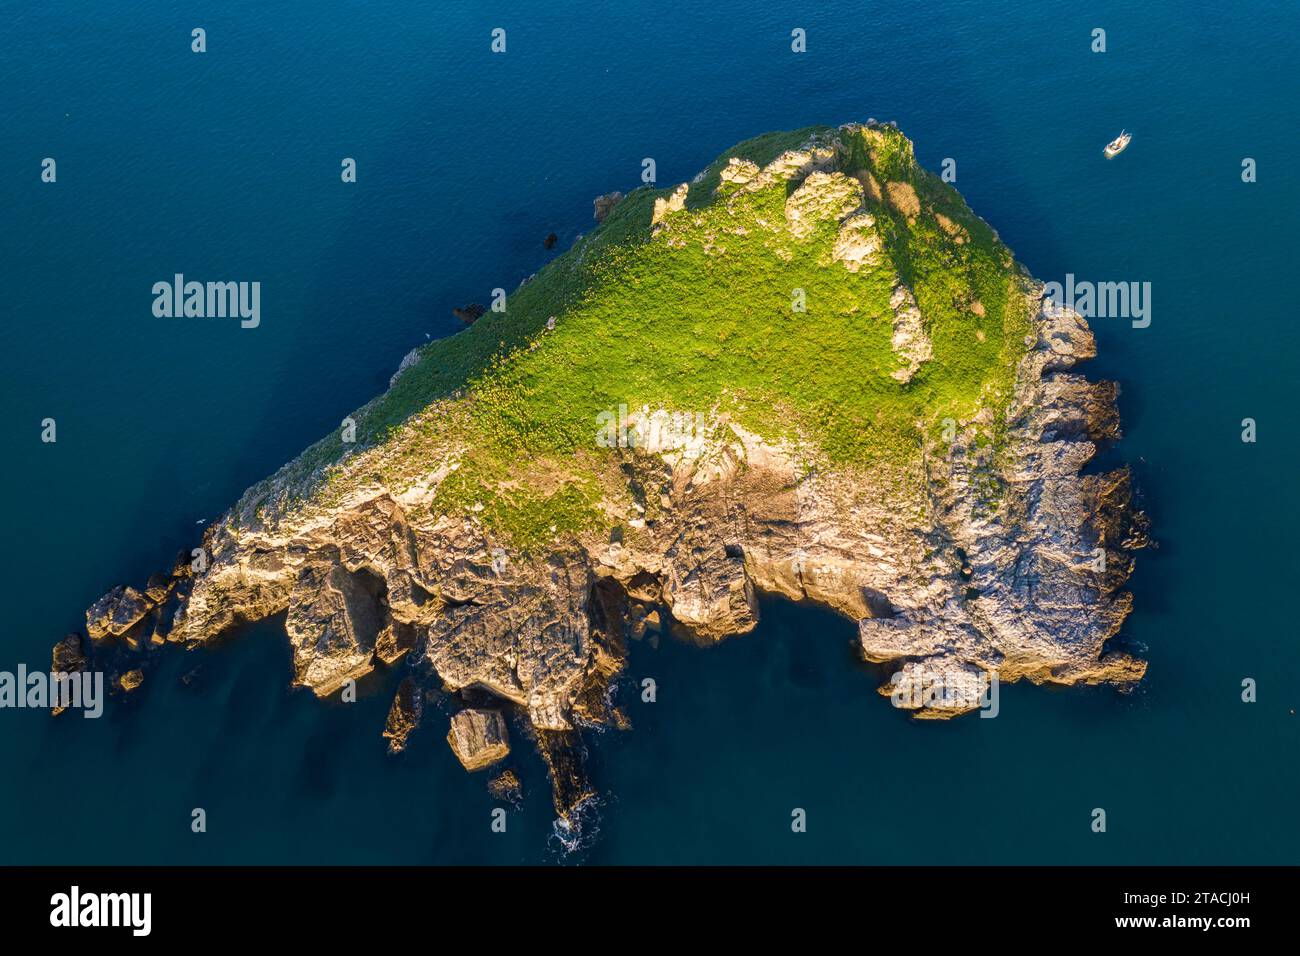 Vue aérienne de l'île de Thatcher Rock au large de la côte de Torquay, Devon, Angleterre. Hiver (février) 2022. Banque D'Images